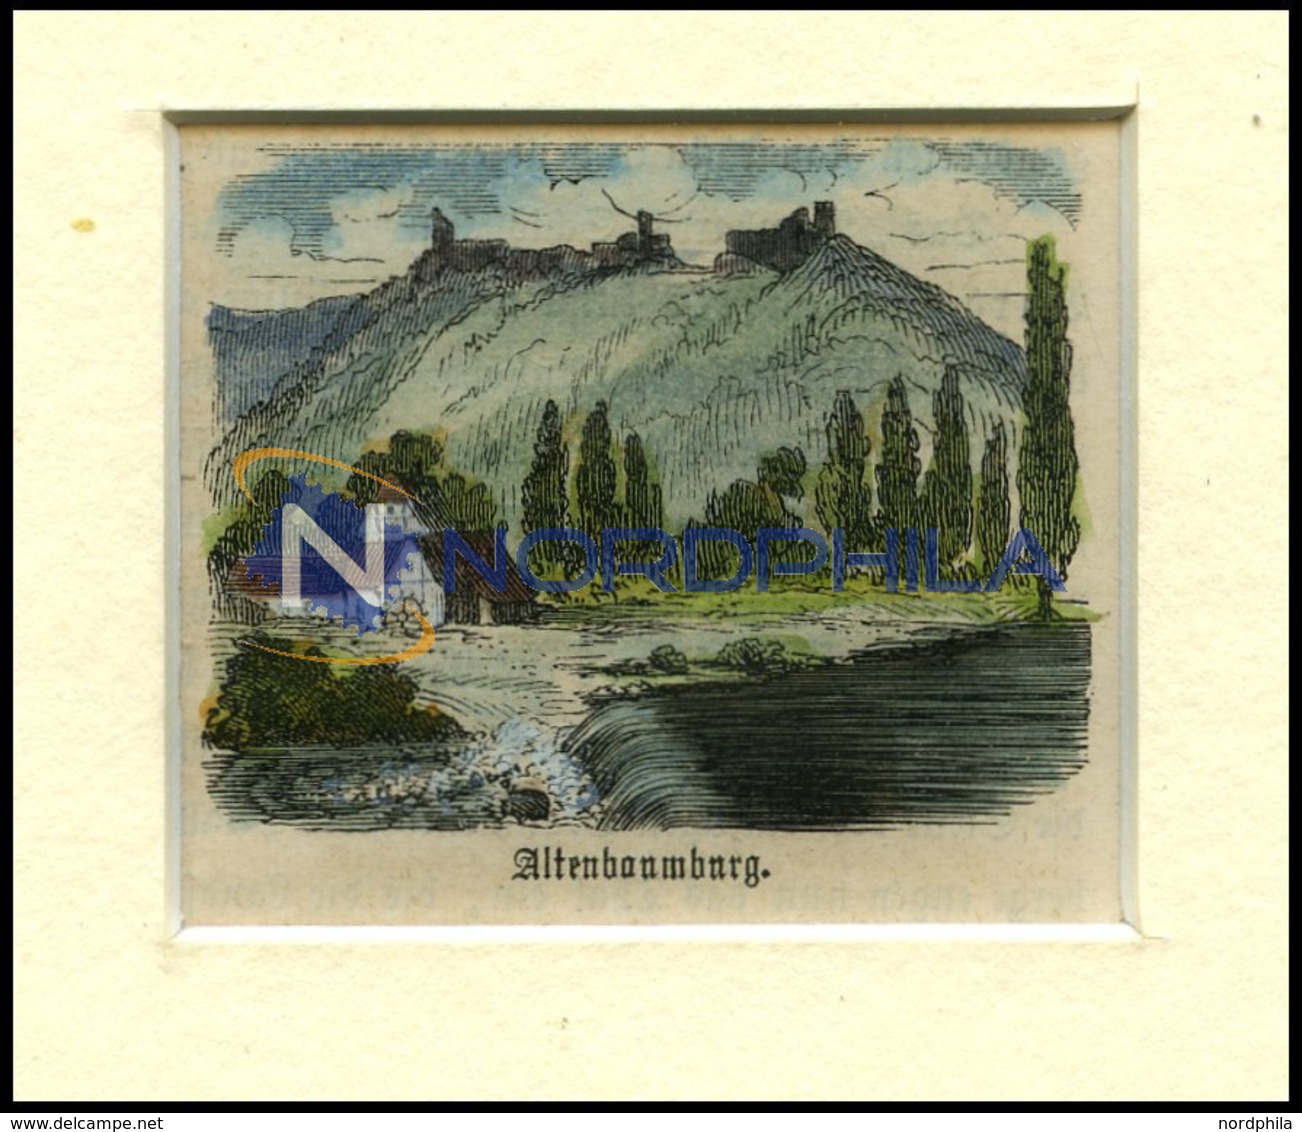 ALTENBAMBERG, Teilansicht Mit Burgruine, Kolorierter Holzstich Um 1880 - Litografia